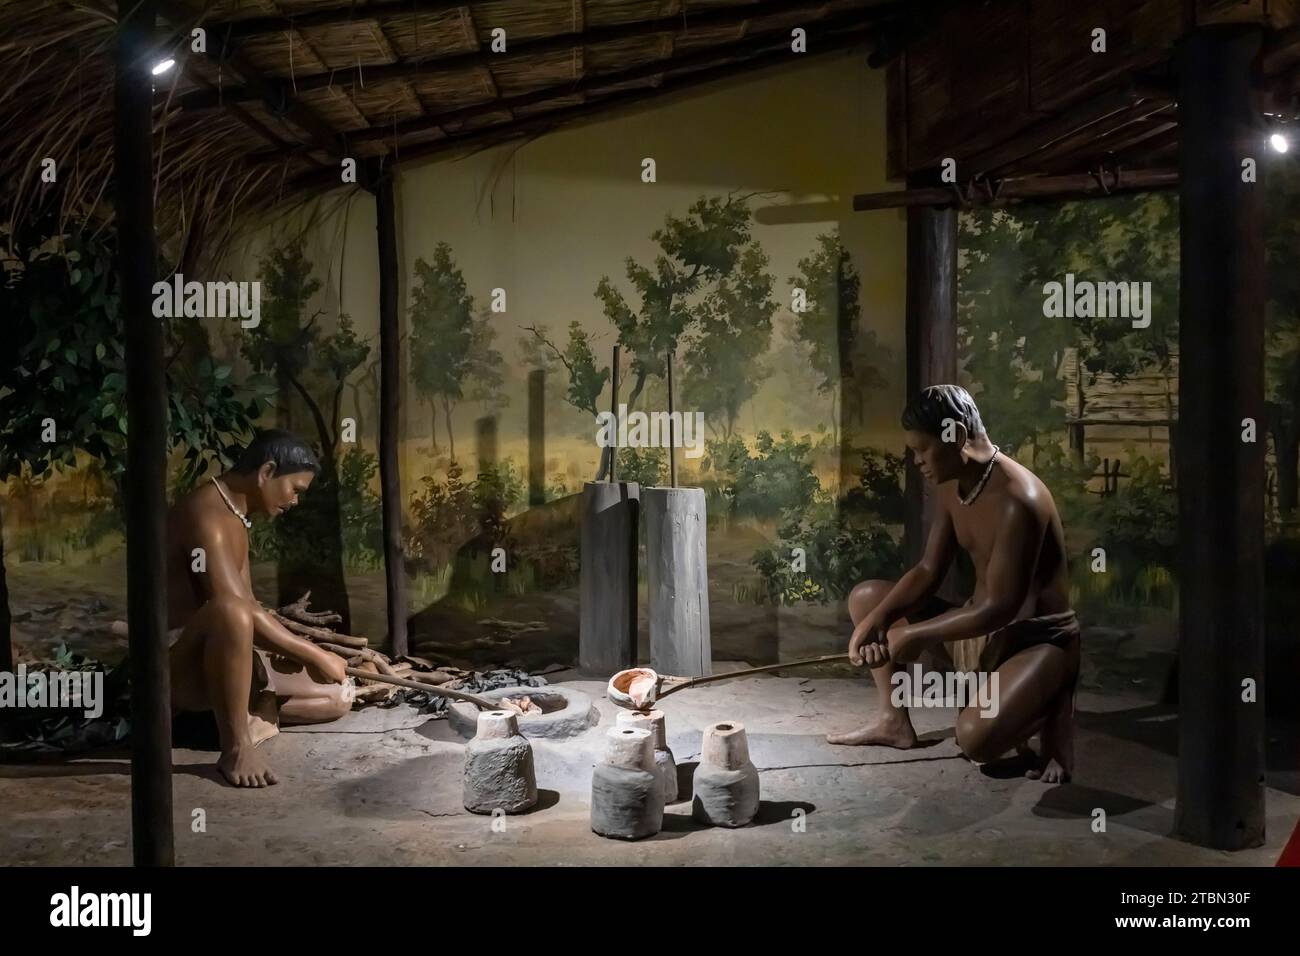 Museo nazionale di Ban Chiang, diorama della vita umana antica, metallurgia, Ban Chiang, Udon Thani, Thailandia, sud-est asiatico, Asia Foto Stock